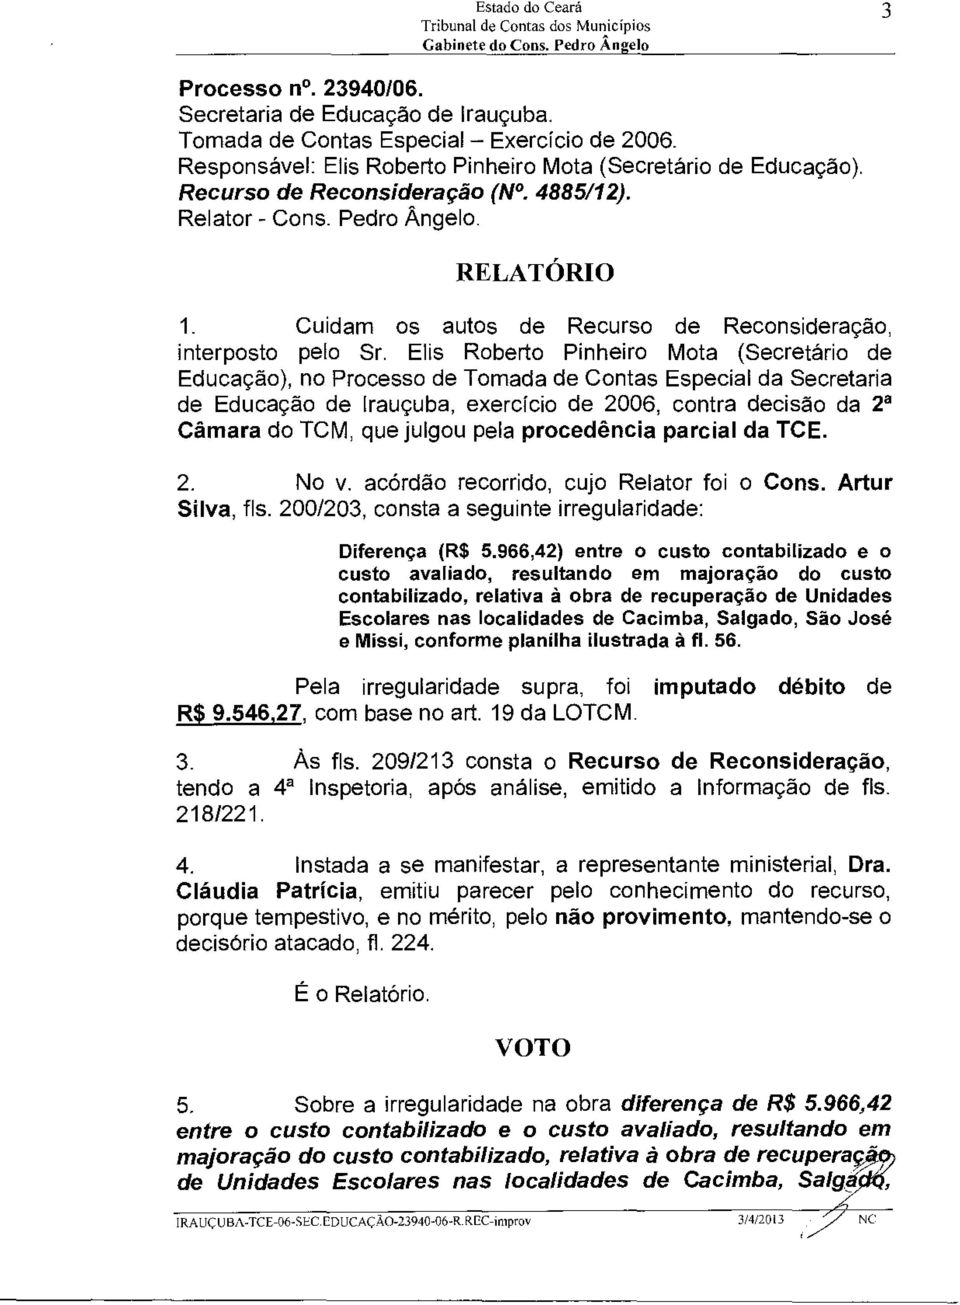 Elis Roberto Pinheiro Mota (Secretário de Educação), no Processo de Tomada de Contas Especial da Secretaria de Educação de Irauçuba, exercício de 2006, contra decisão da 2a Câmara do TCM, que julgou